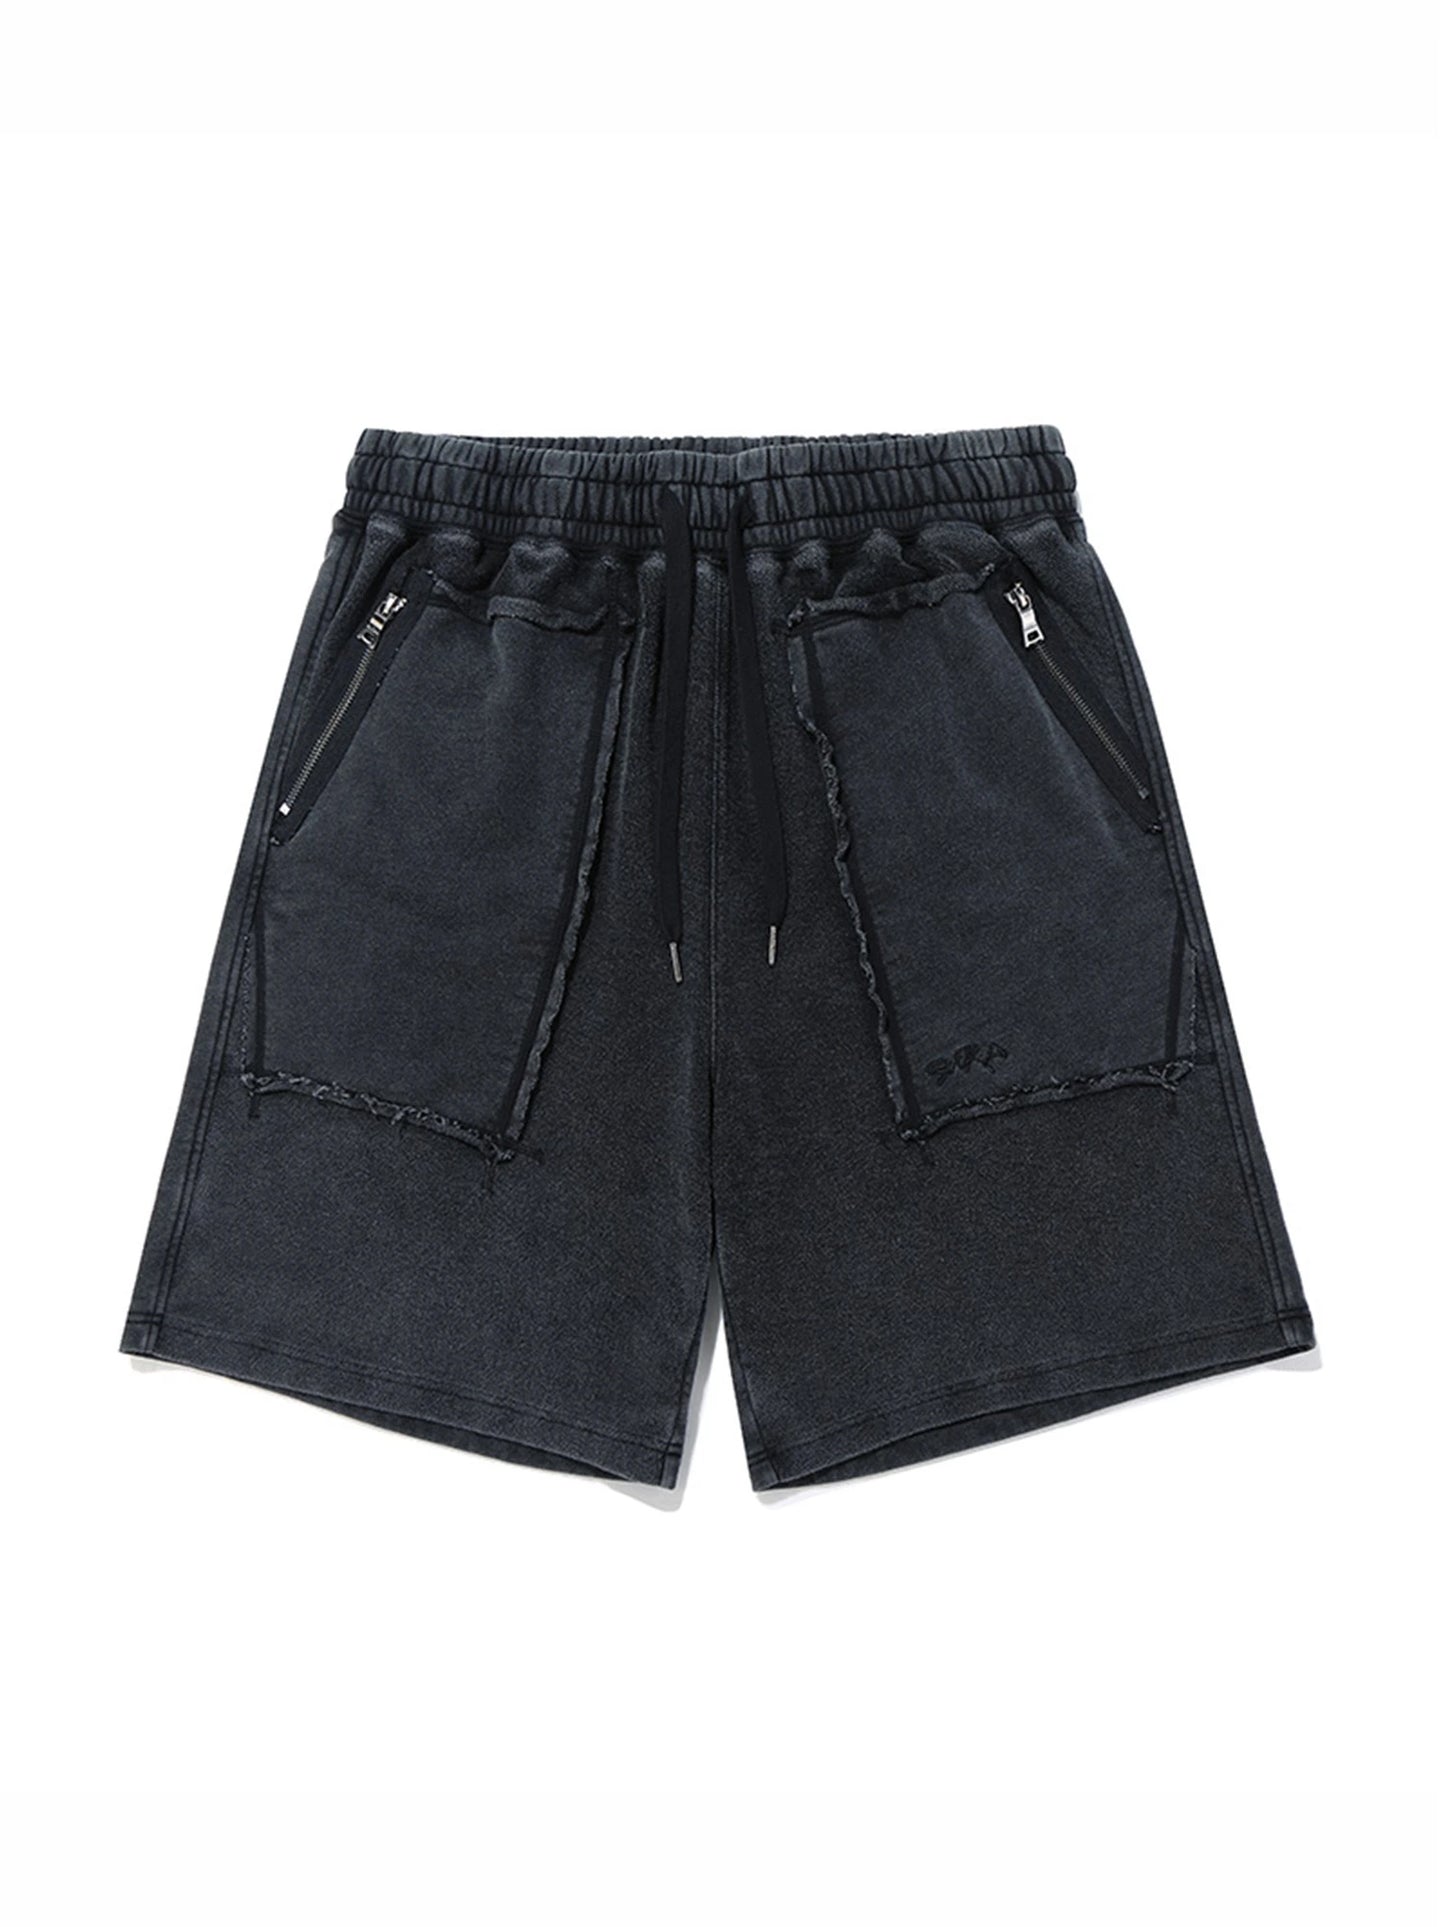 Black Oversized Knit Summer Shorts